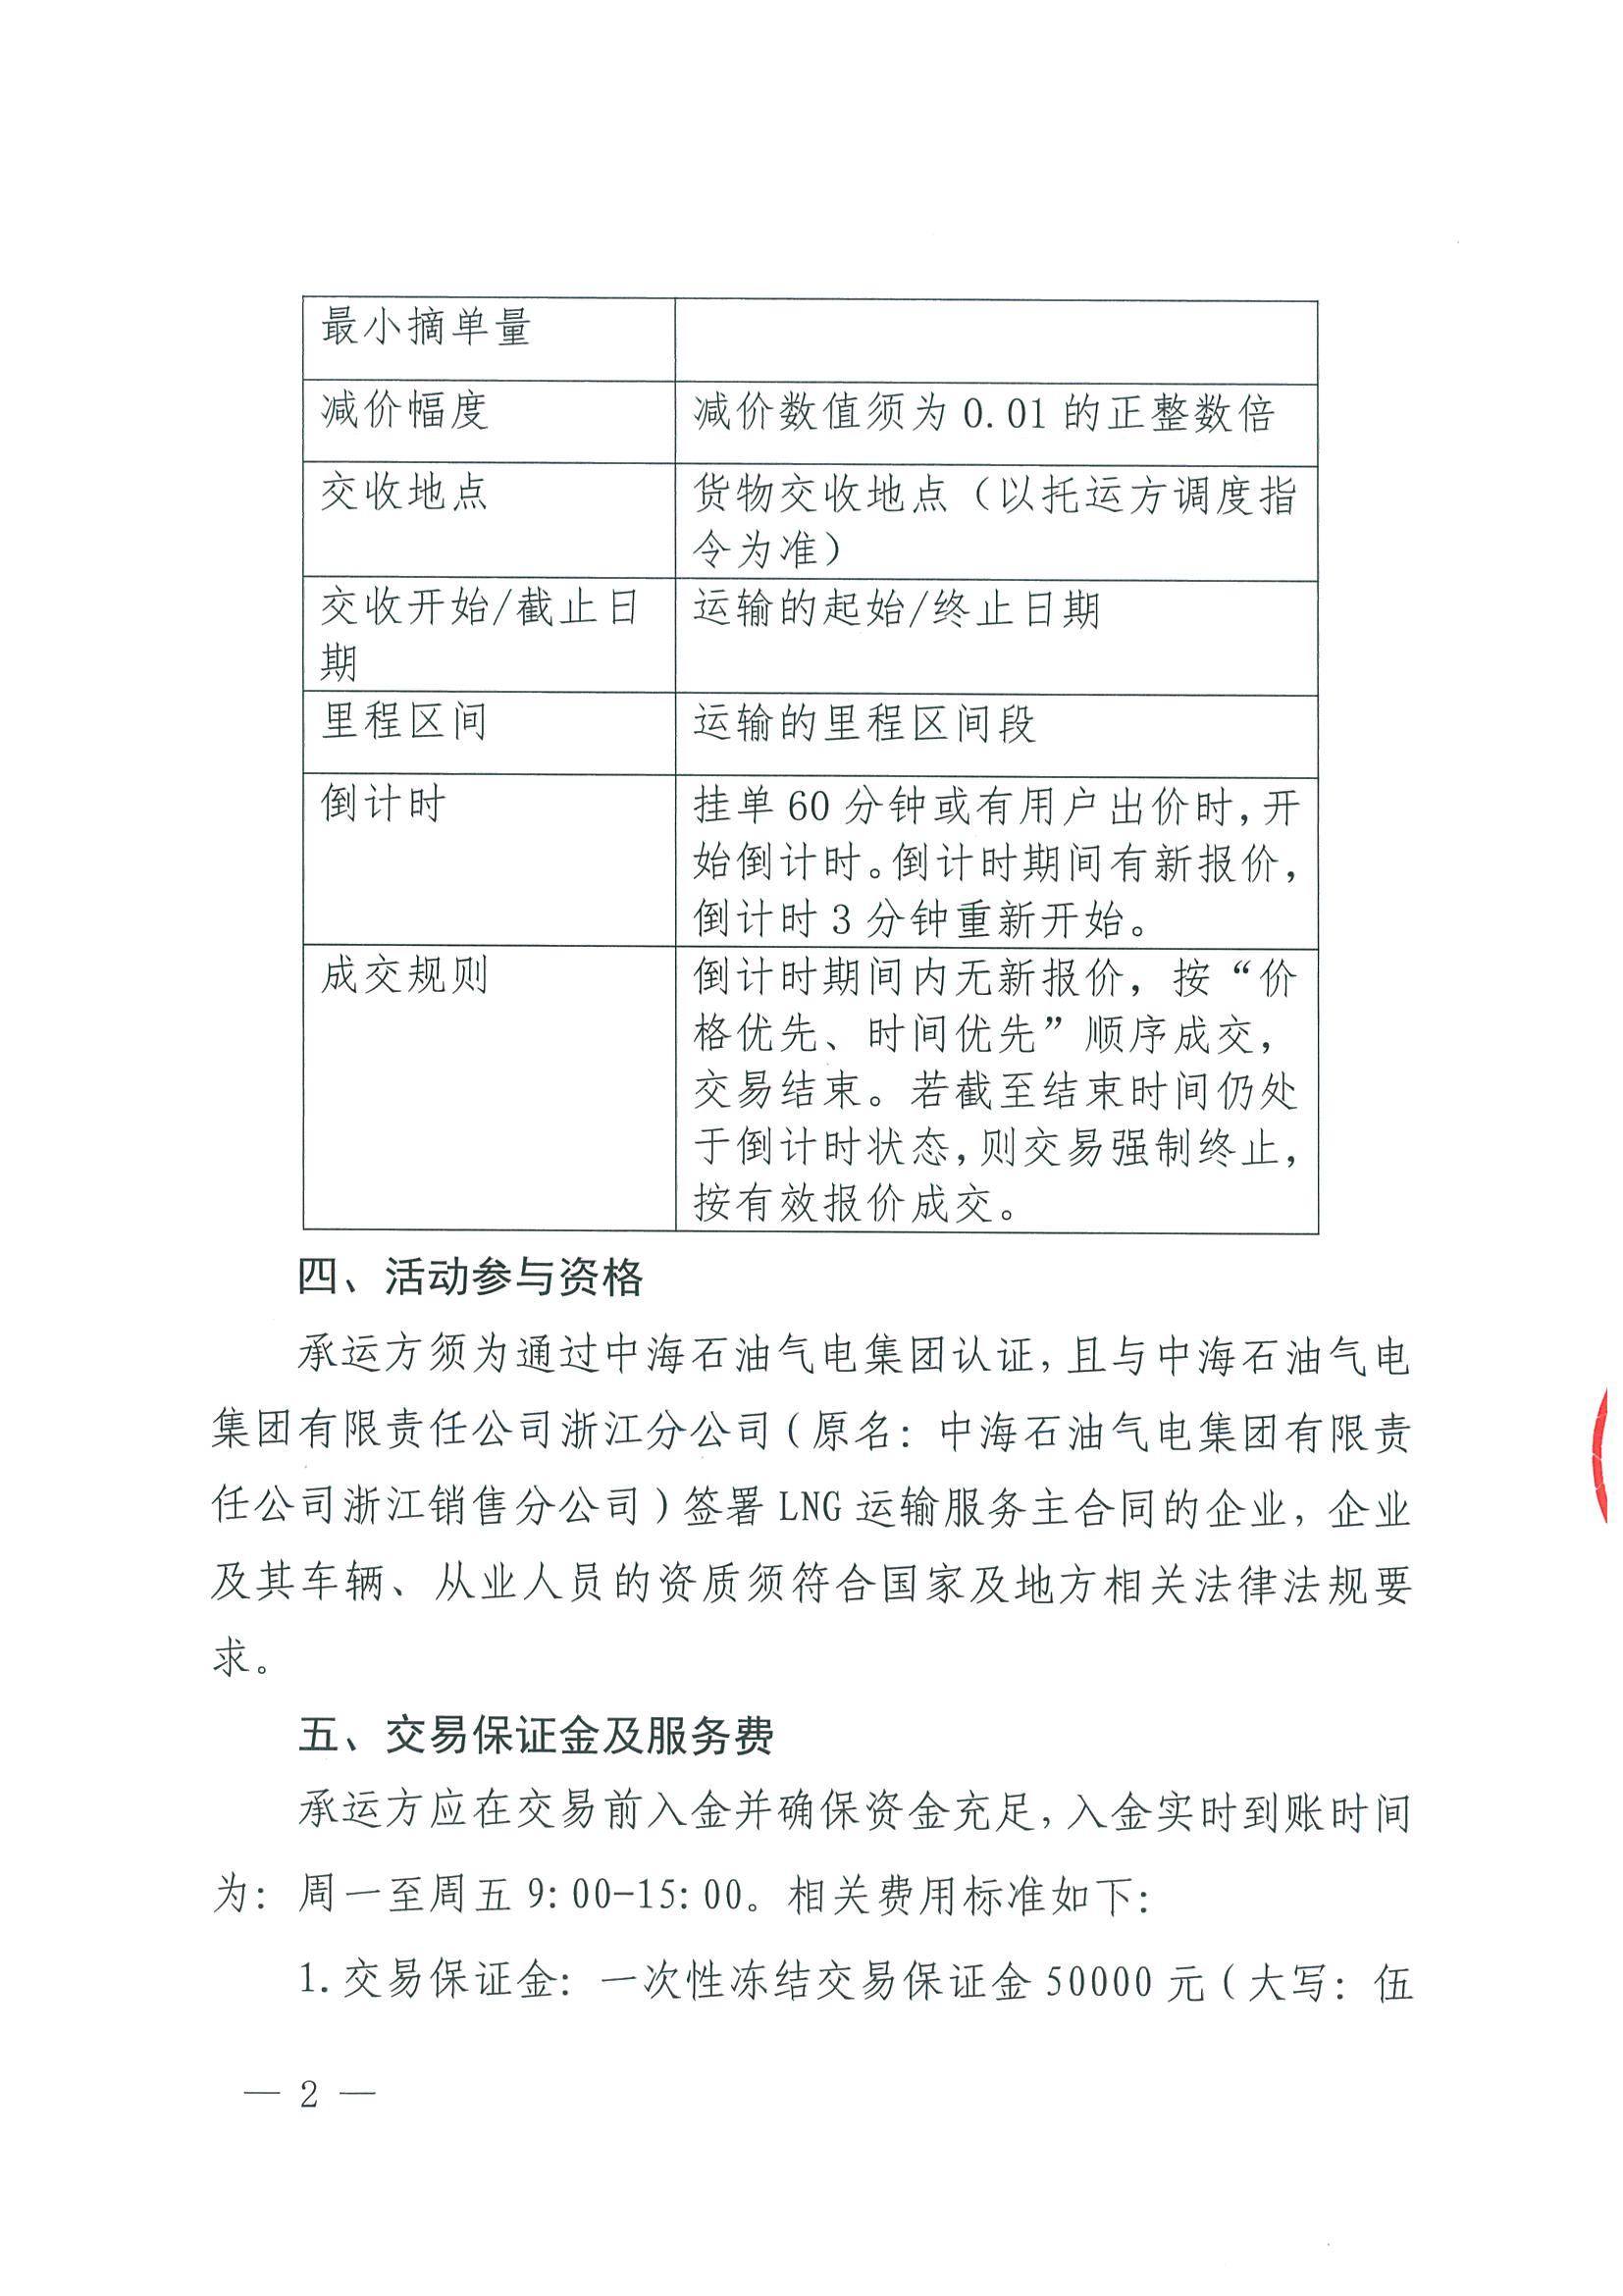 附件一：关于开展LNG运力竞价交易的公告0927_页面_2.png